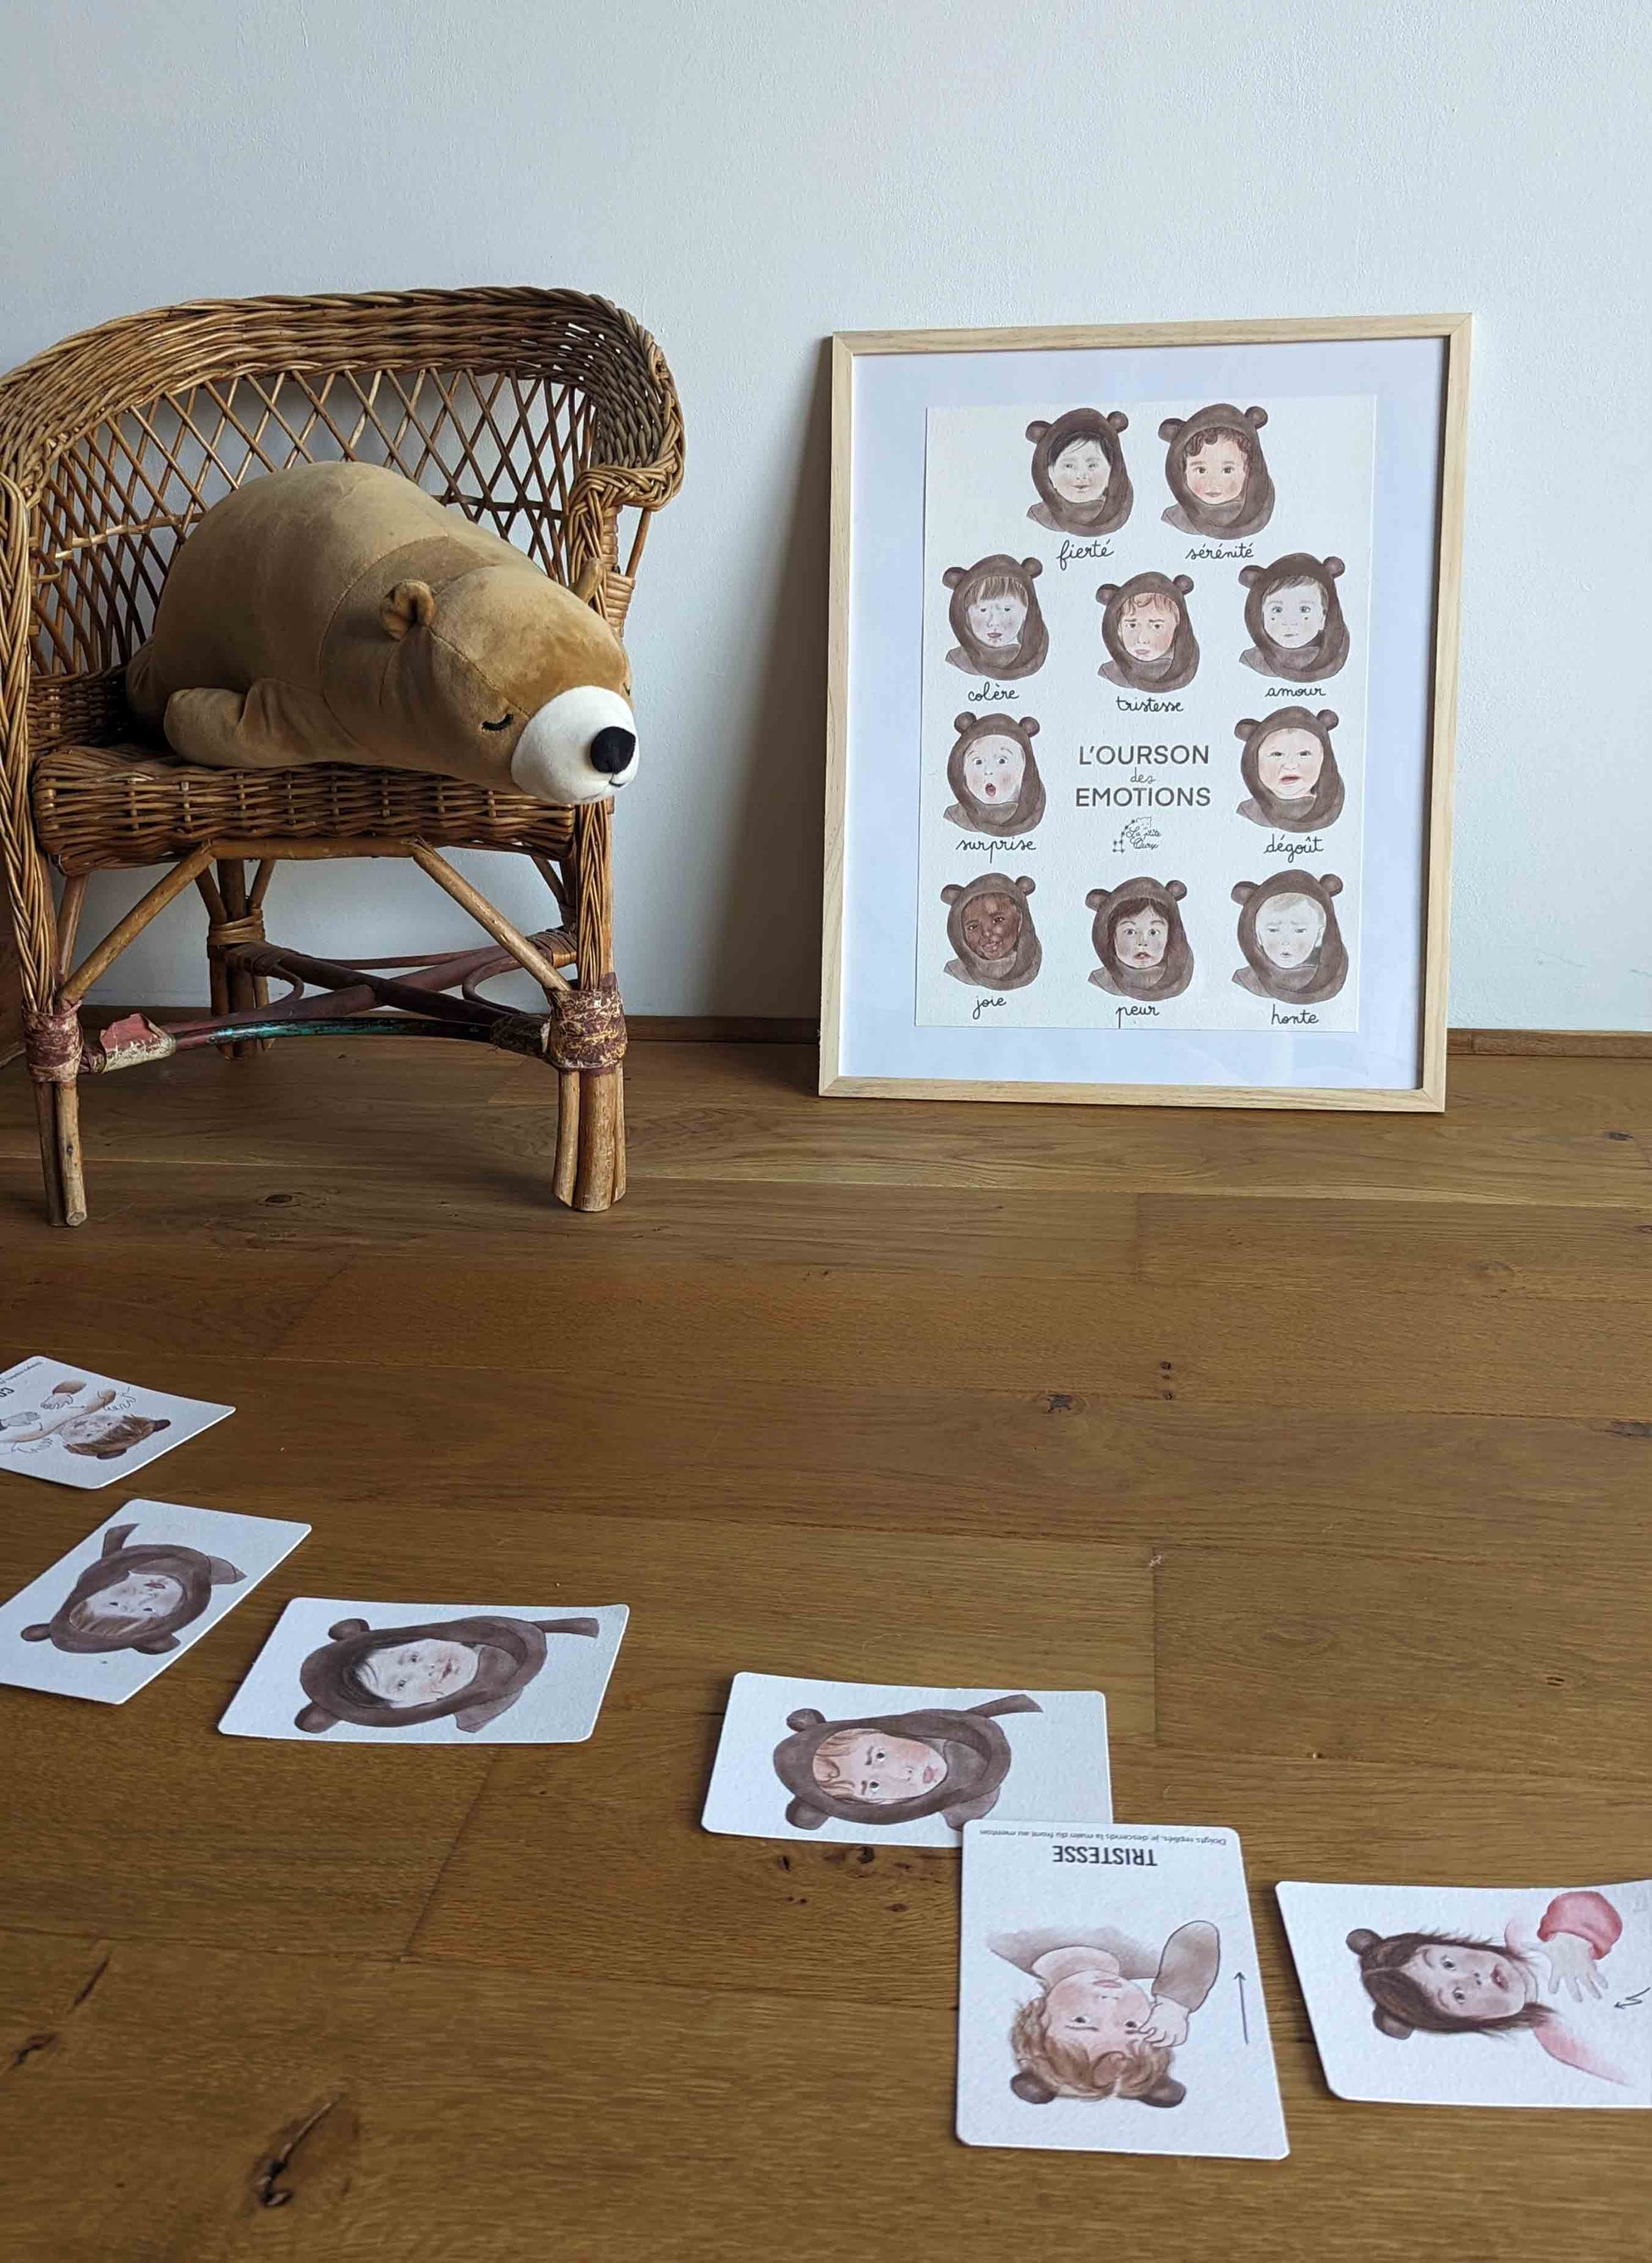 Affiche et cartes bébé signe, l'Ourson des Émotions mises en scène au sol, avec une peluche d'ours regardant la scéne.